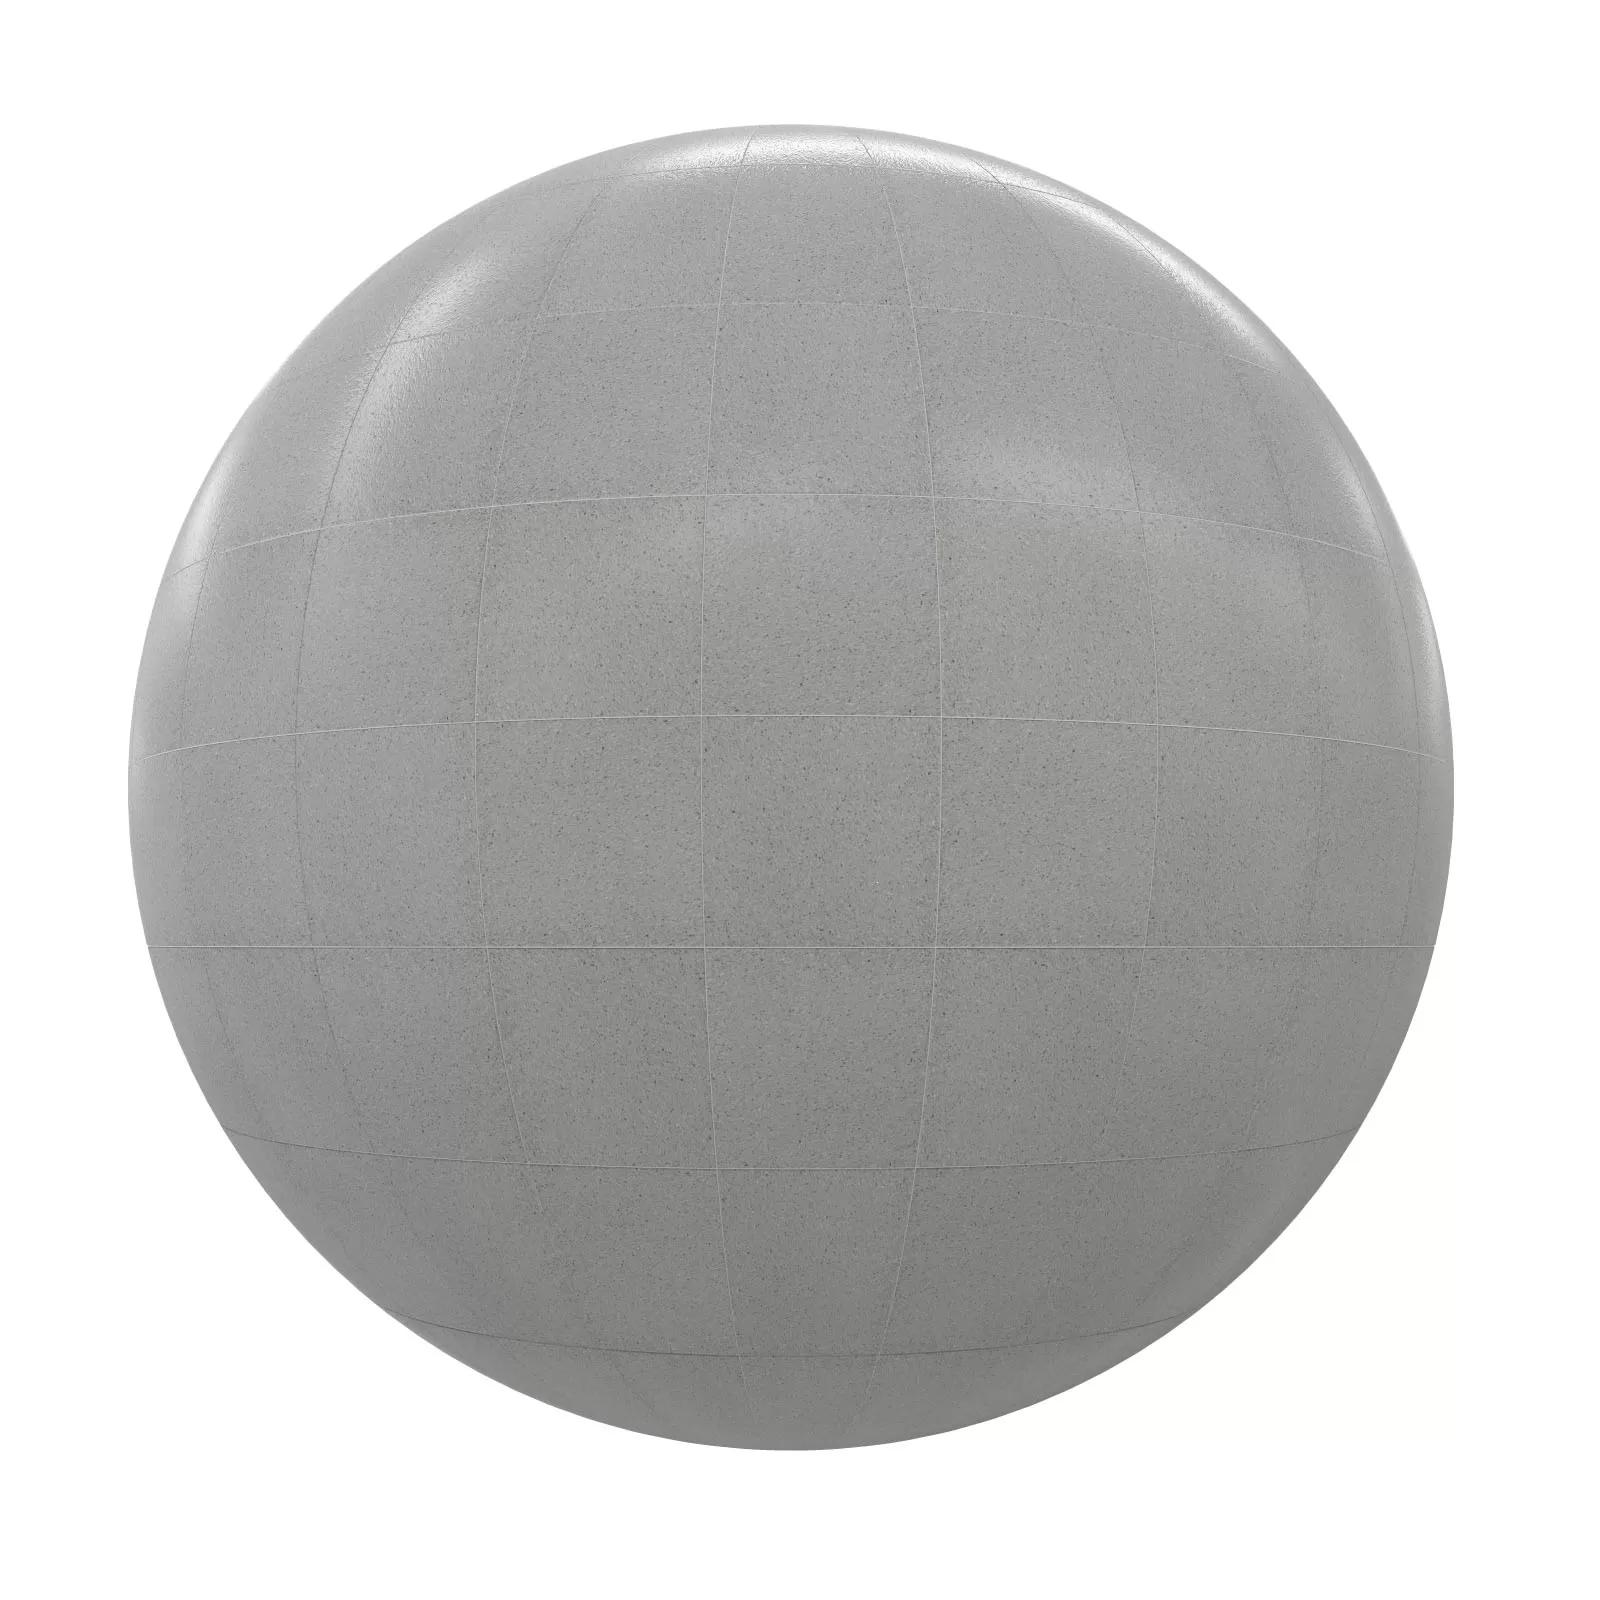 PBR CGAXIS TEXTURES – TILES – Grey Tiles 18